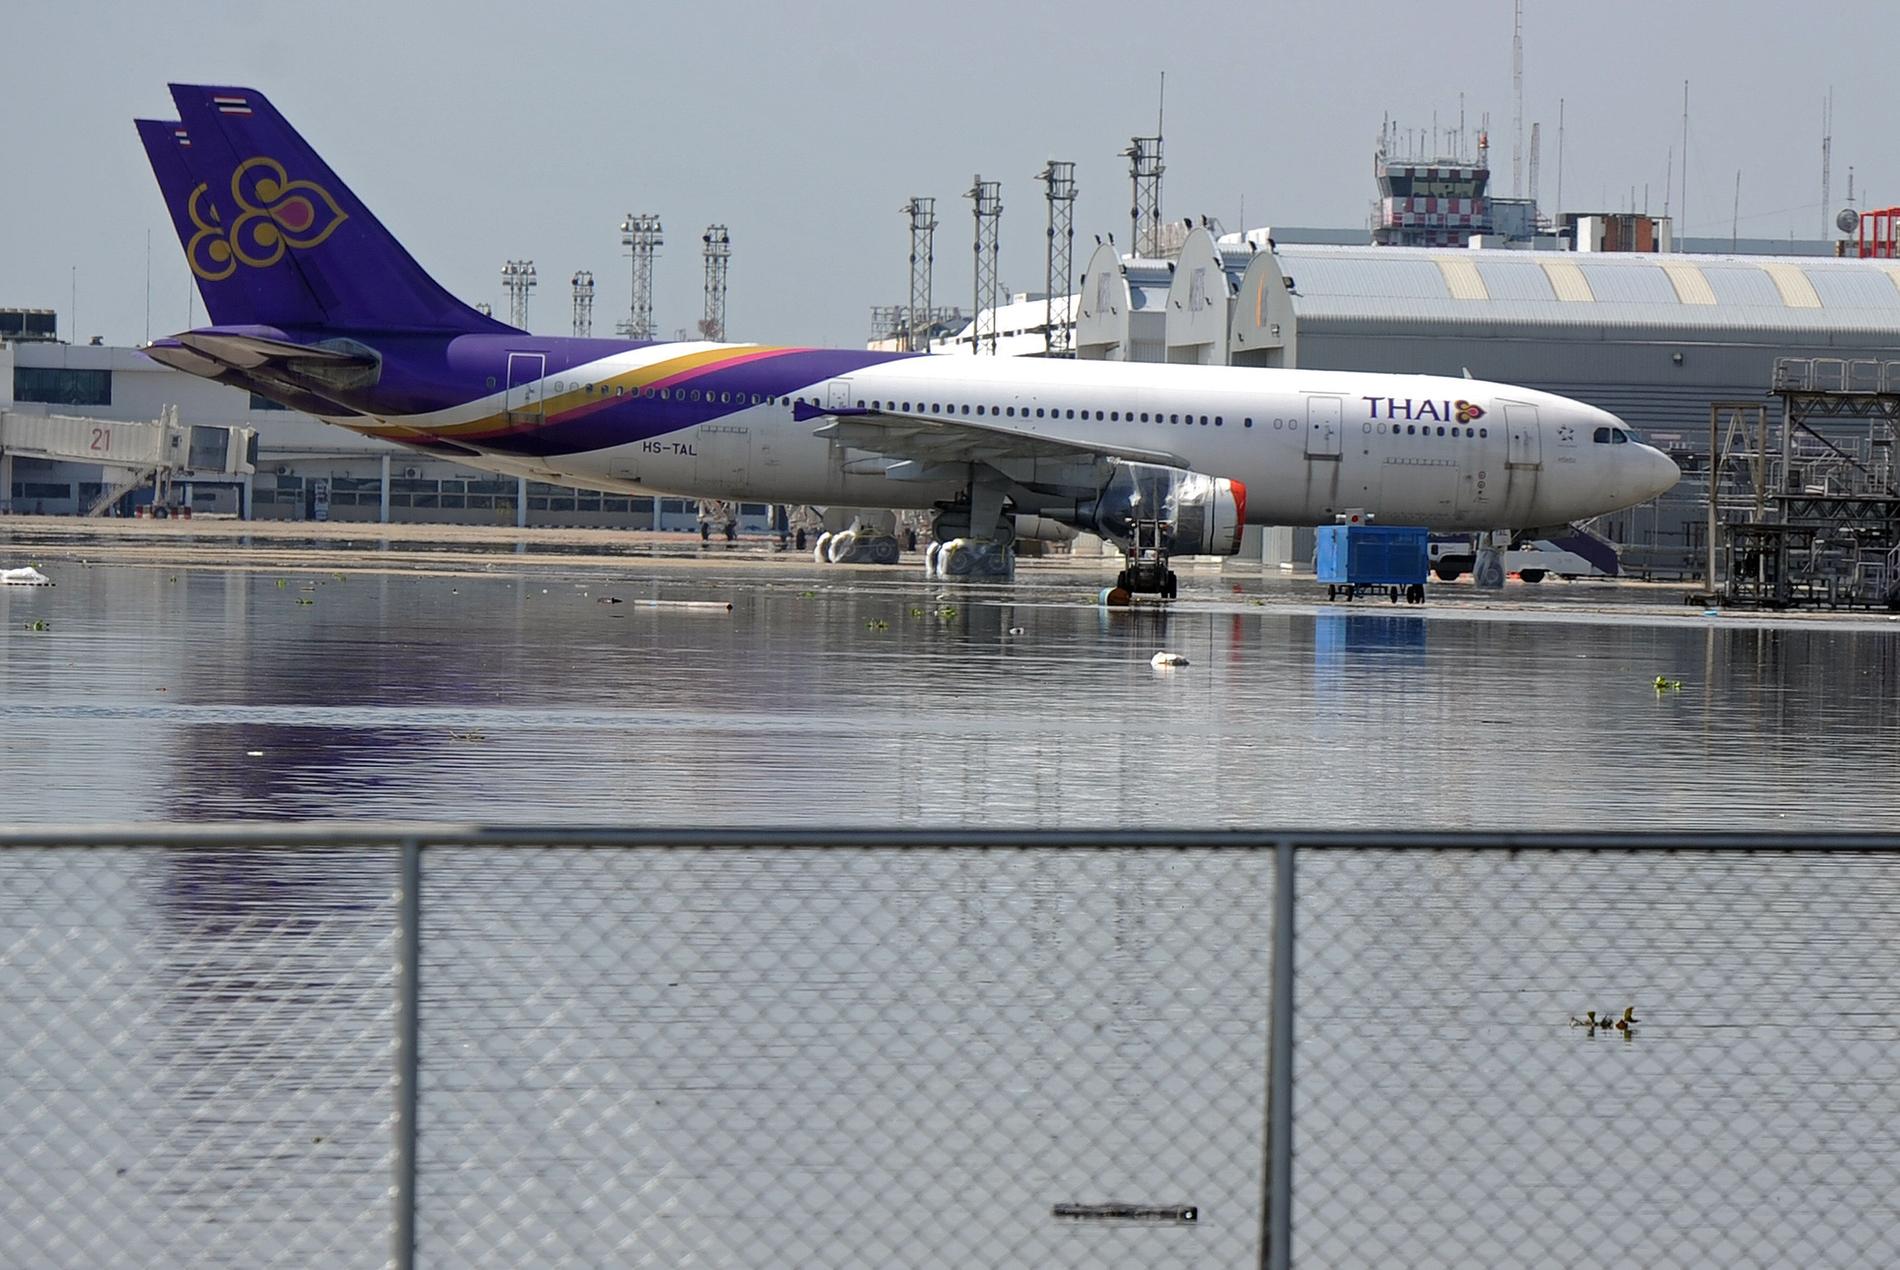 Bangkoks näst största flygplats Don Muang har använts som evakueringszon.